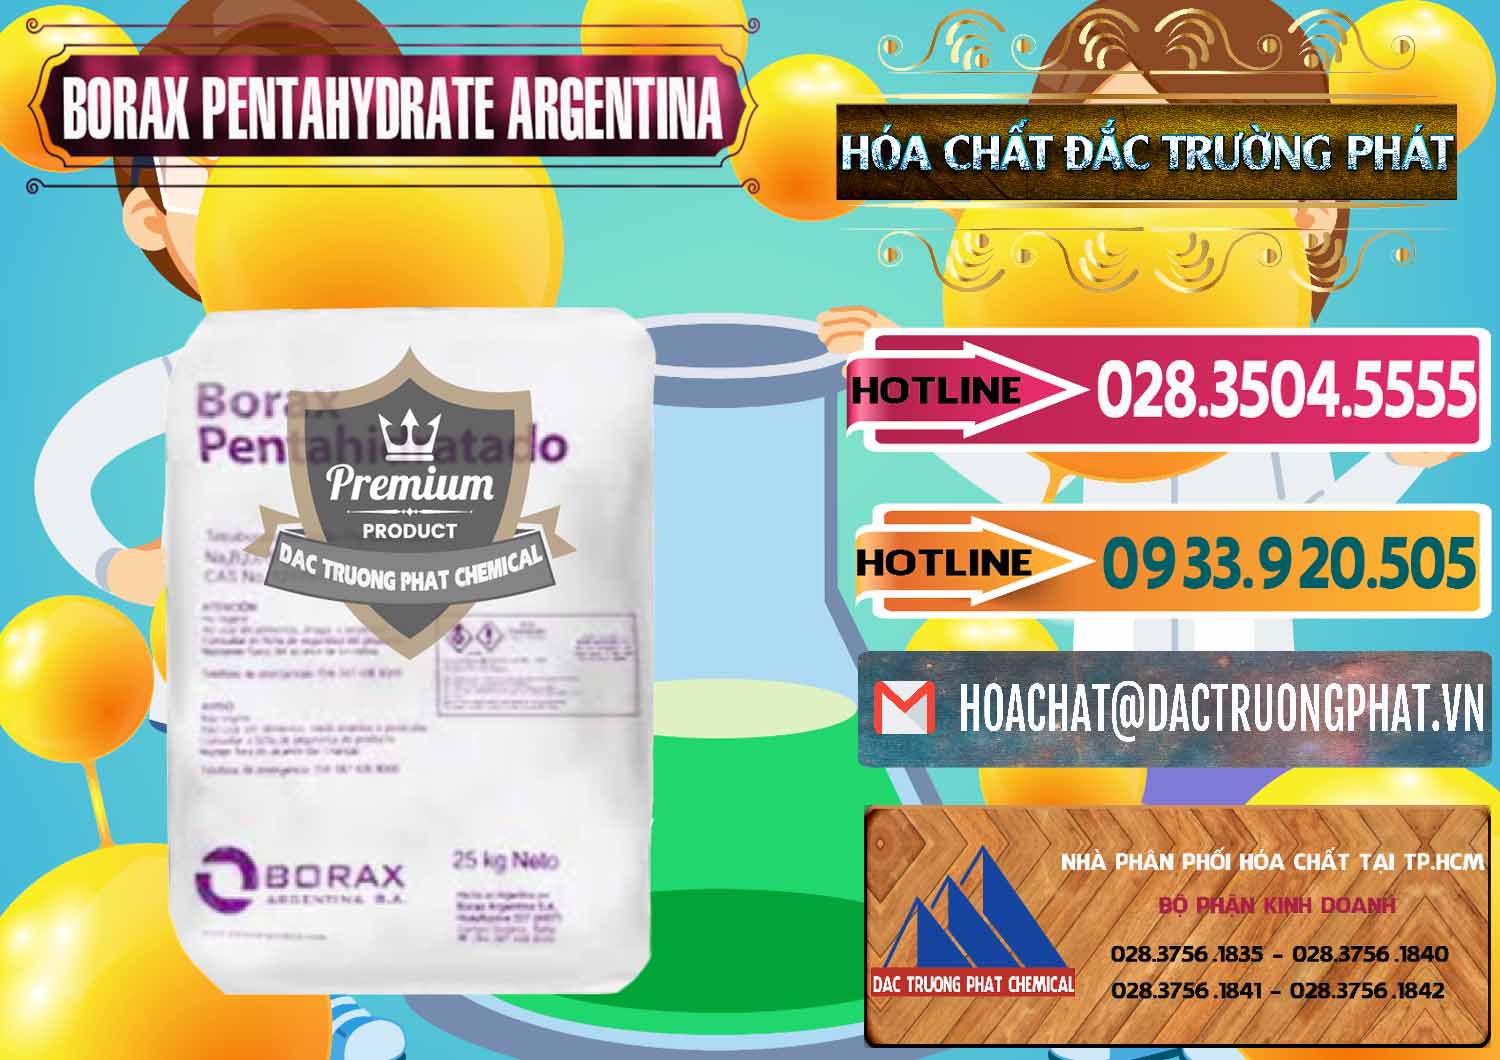 Nơi chuyên bán và cung cấp Borax Pentahydrate Argentina - 0447 - Nơi chuyên phân phối & cung ứng hóa chất tại TP.HCM - dactruongphat.vn